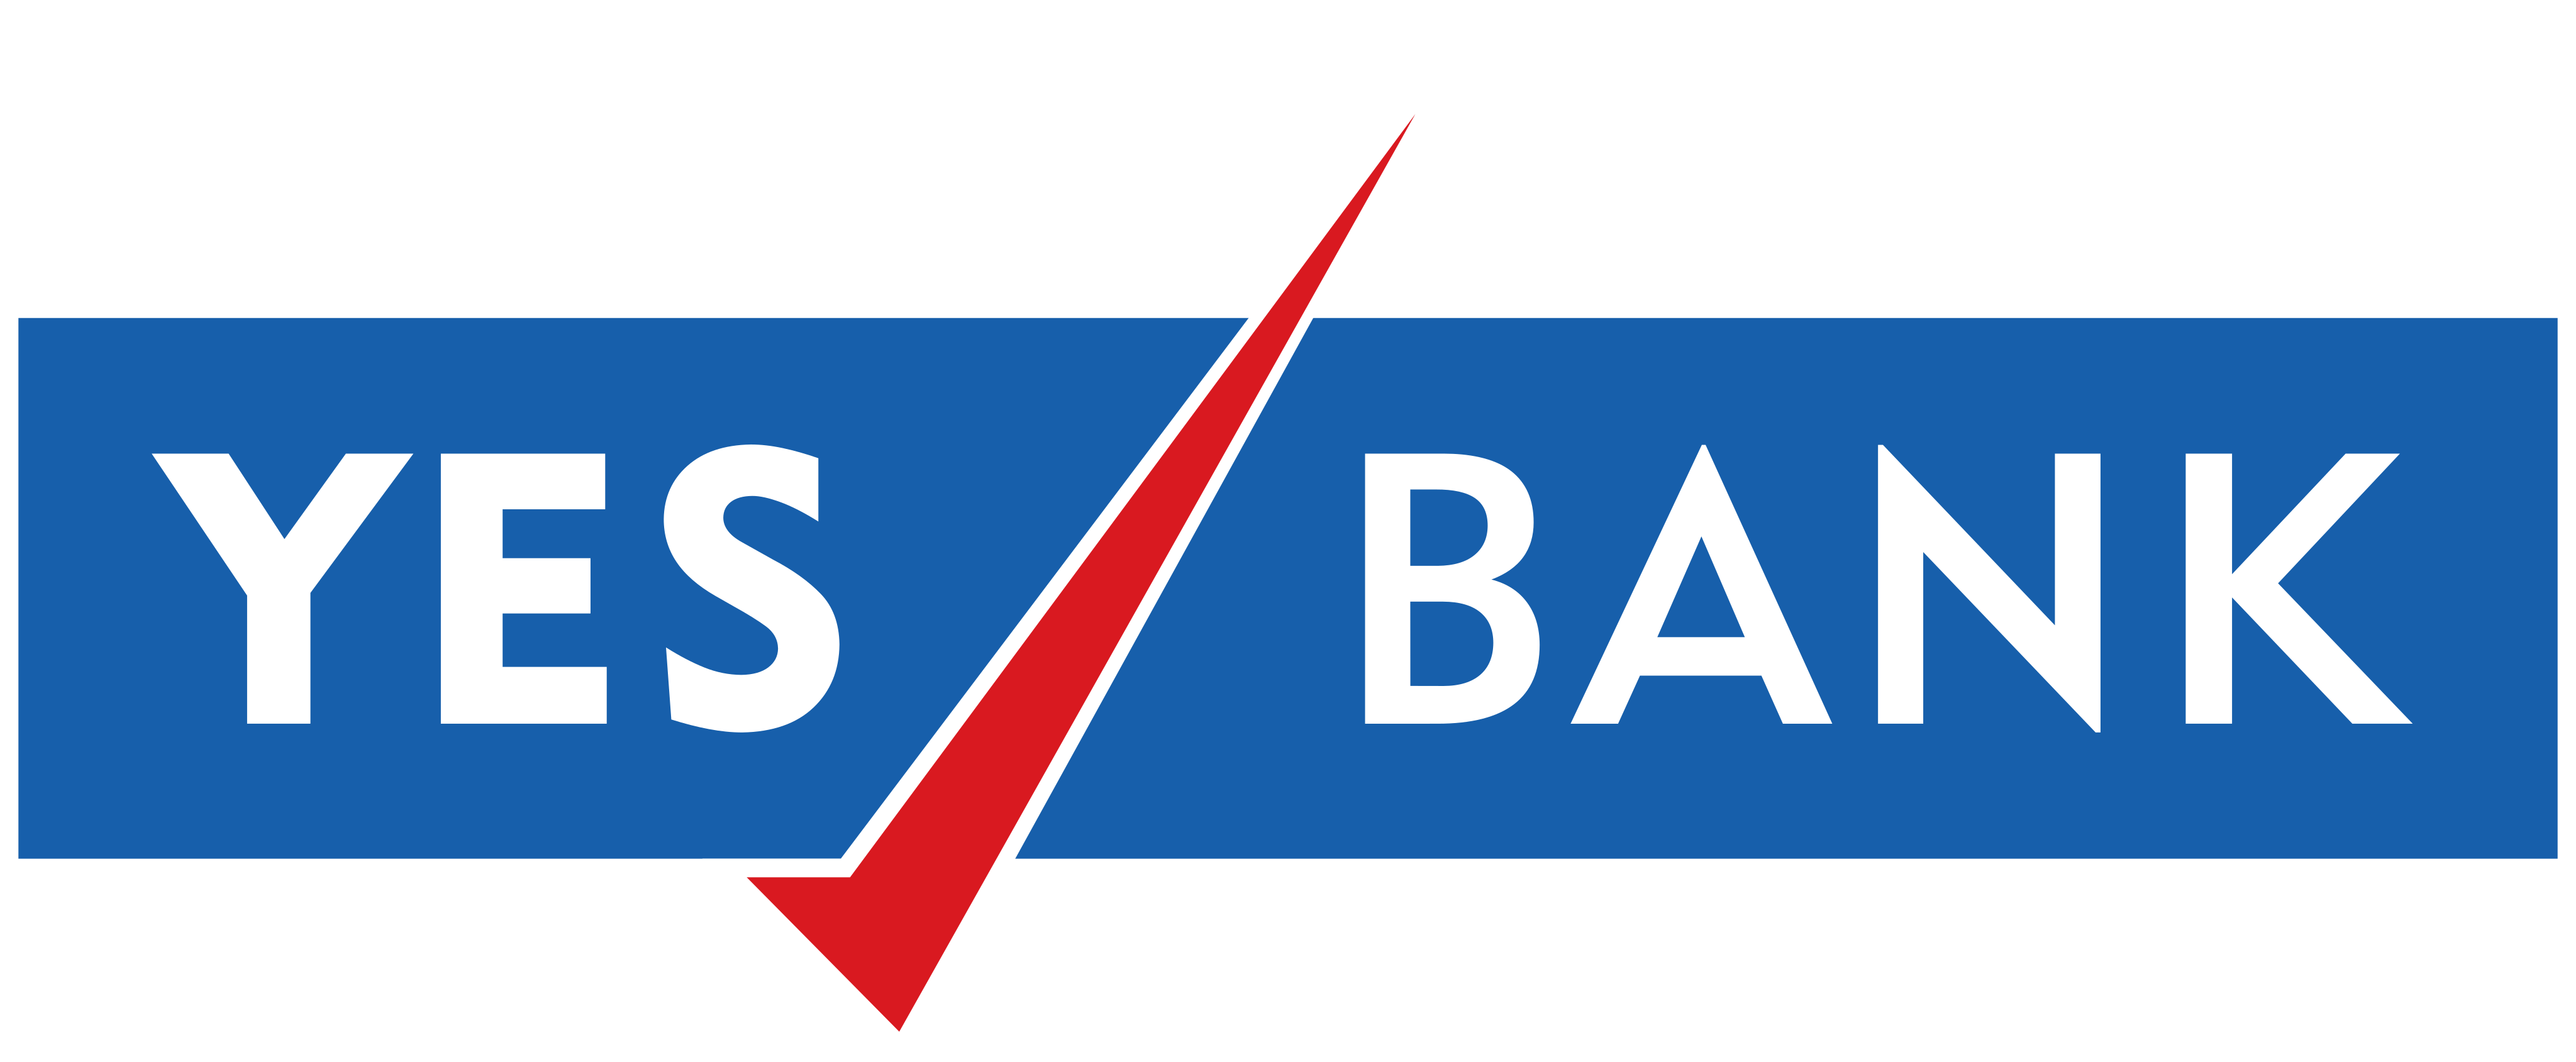 yes-bank-logo